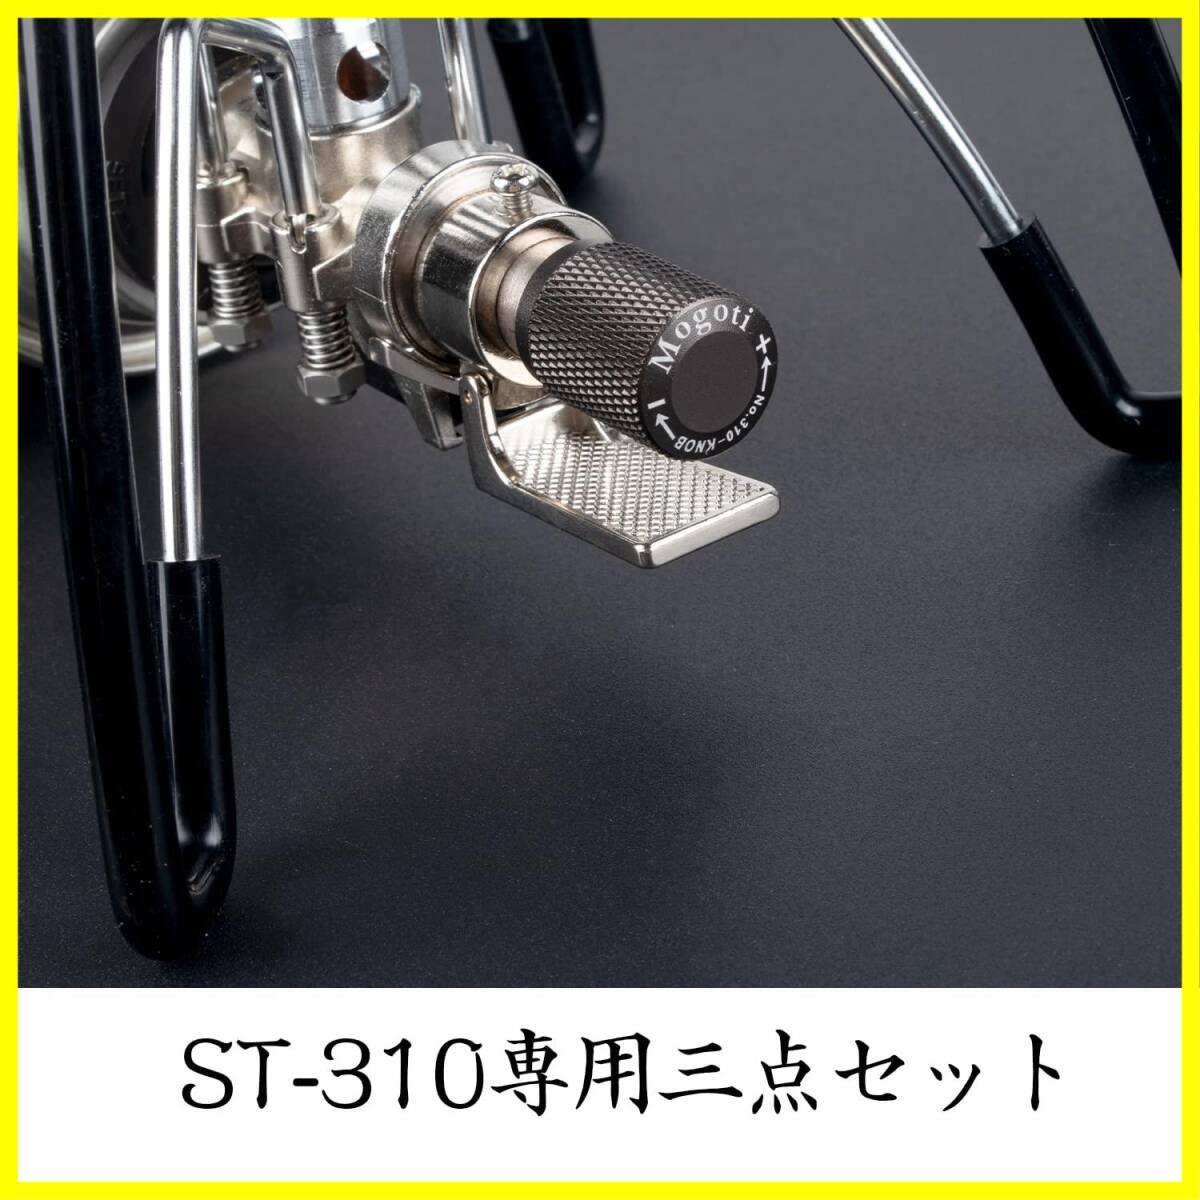 【新着商品】st- st-310用耐熱シリコンチューブ 点火用スイッチ ST-310レギュレーターストーブ専用点火アシストレバー